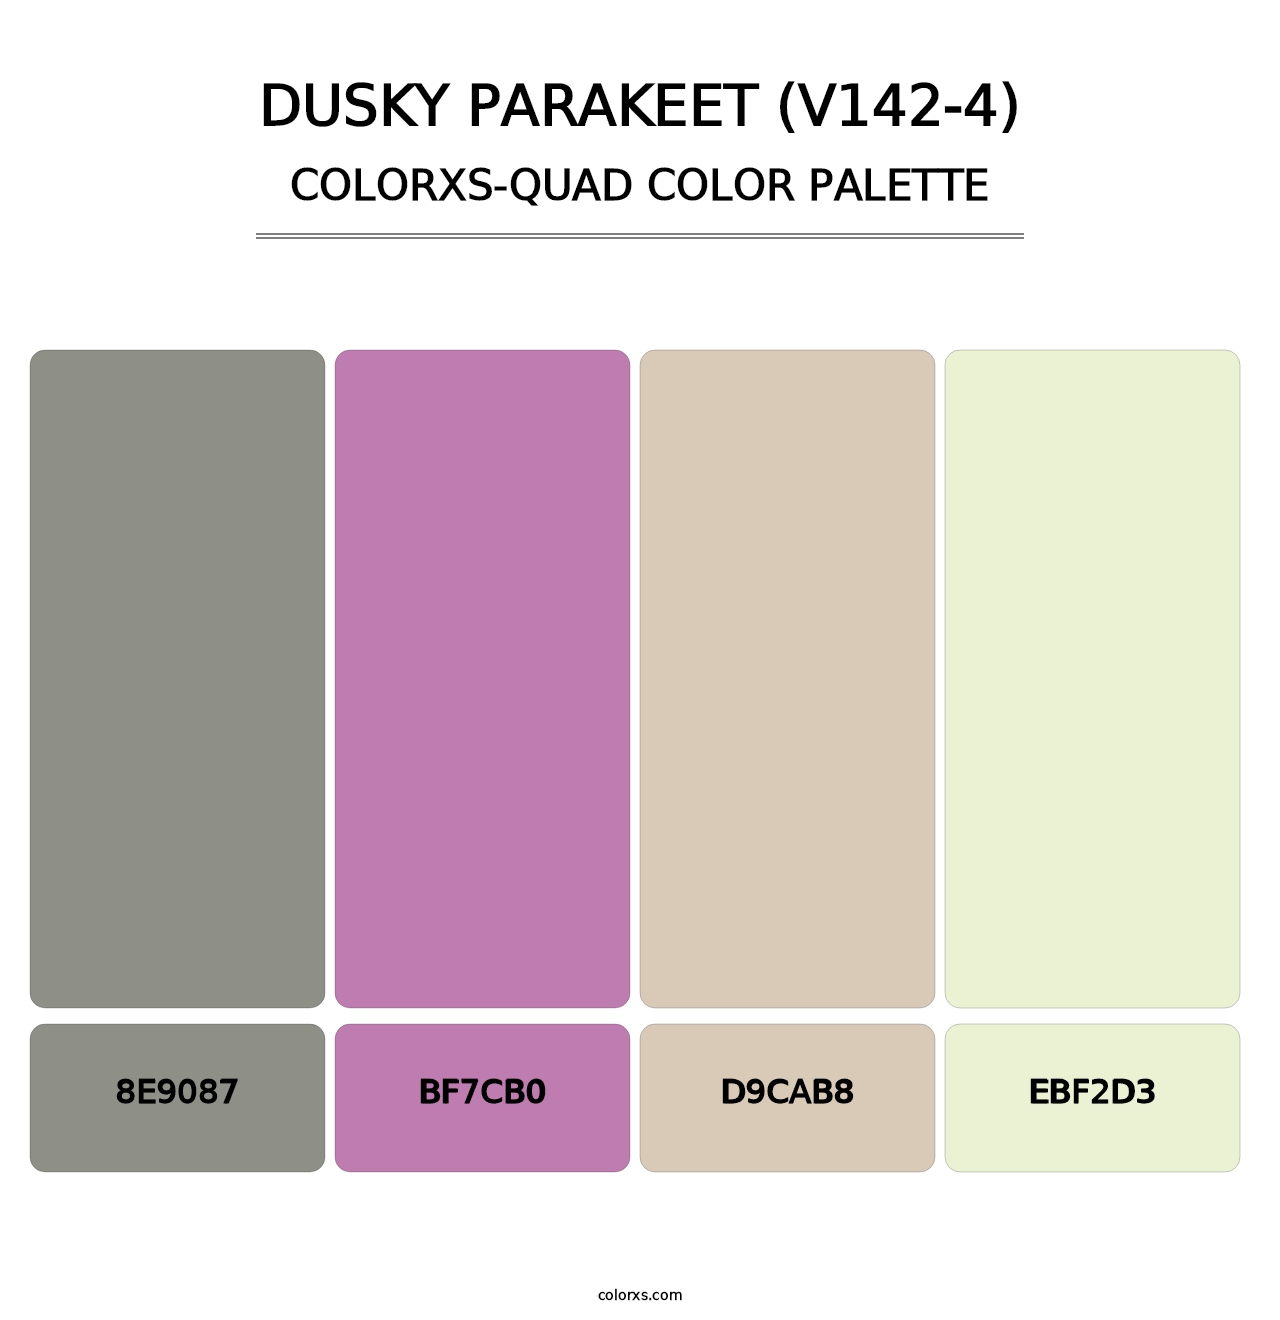 Dusky Parakeet (V142-4) - Colorxs Quad Palette